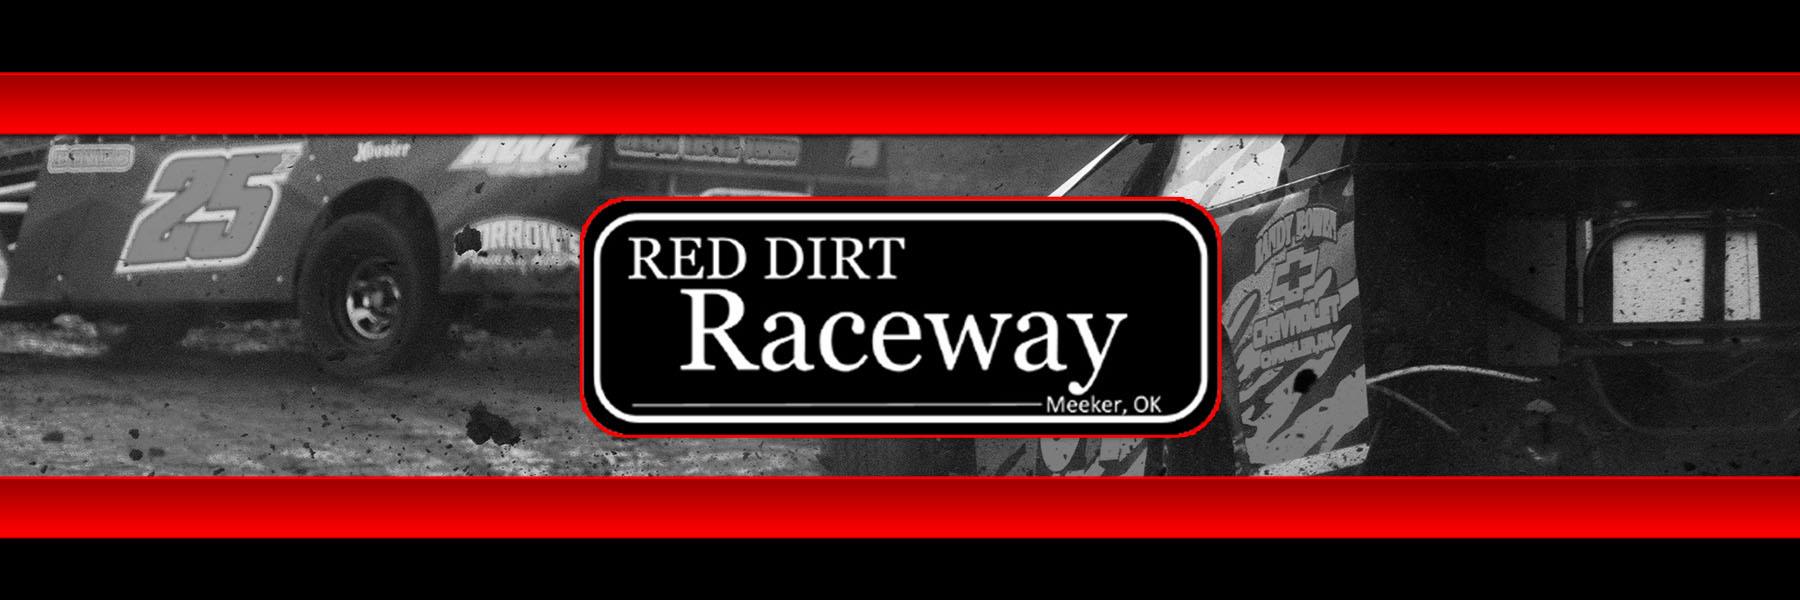 6/11/2021 - Red Dirt Raceway